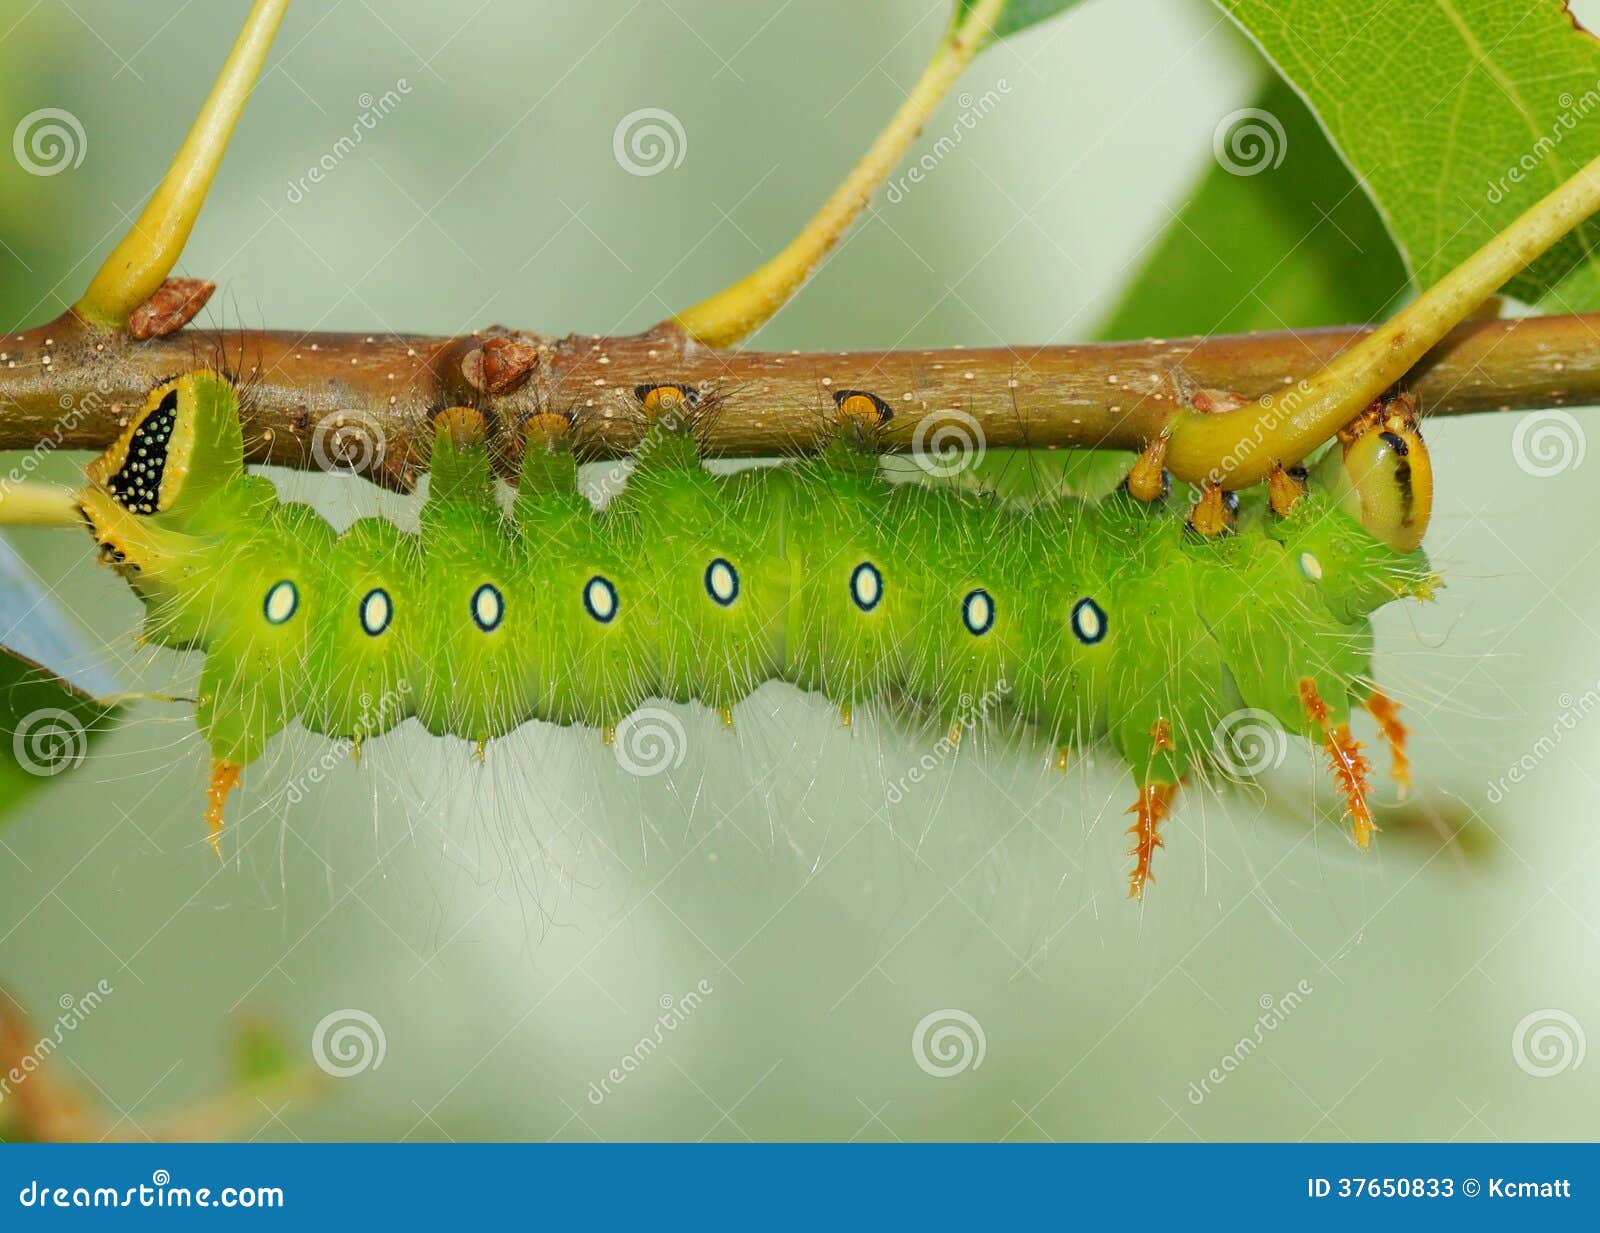 Imperial Moth Caterpillar